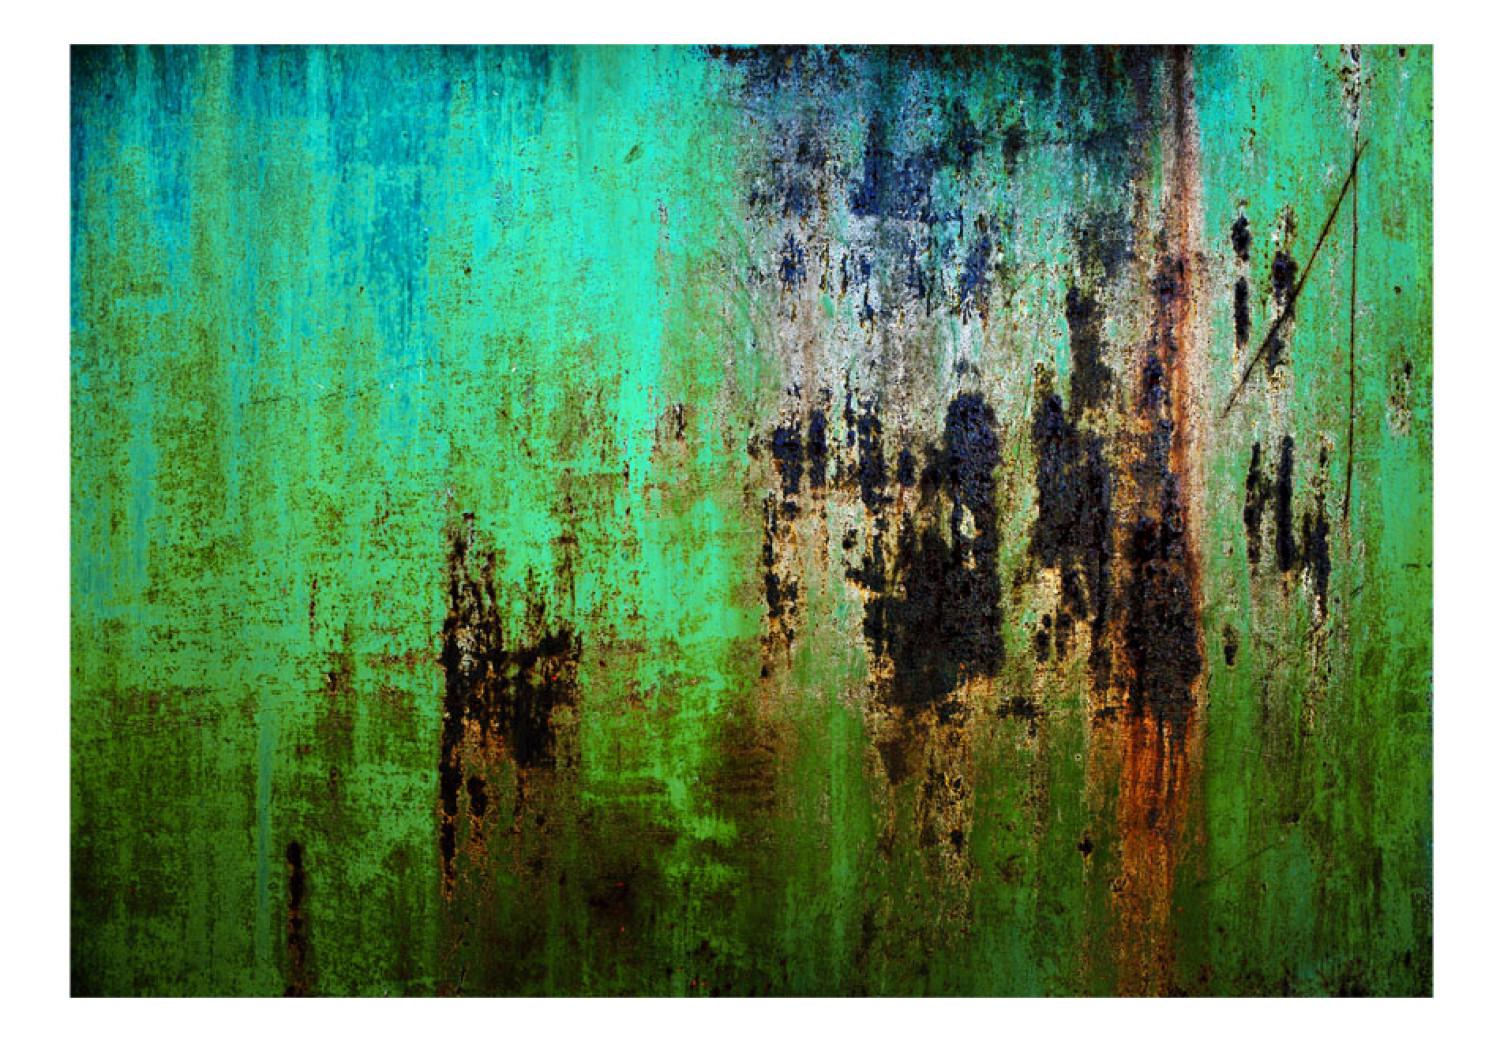 Fotomural Enigma esmeralda - fondo verde con textura de metal rayado